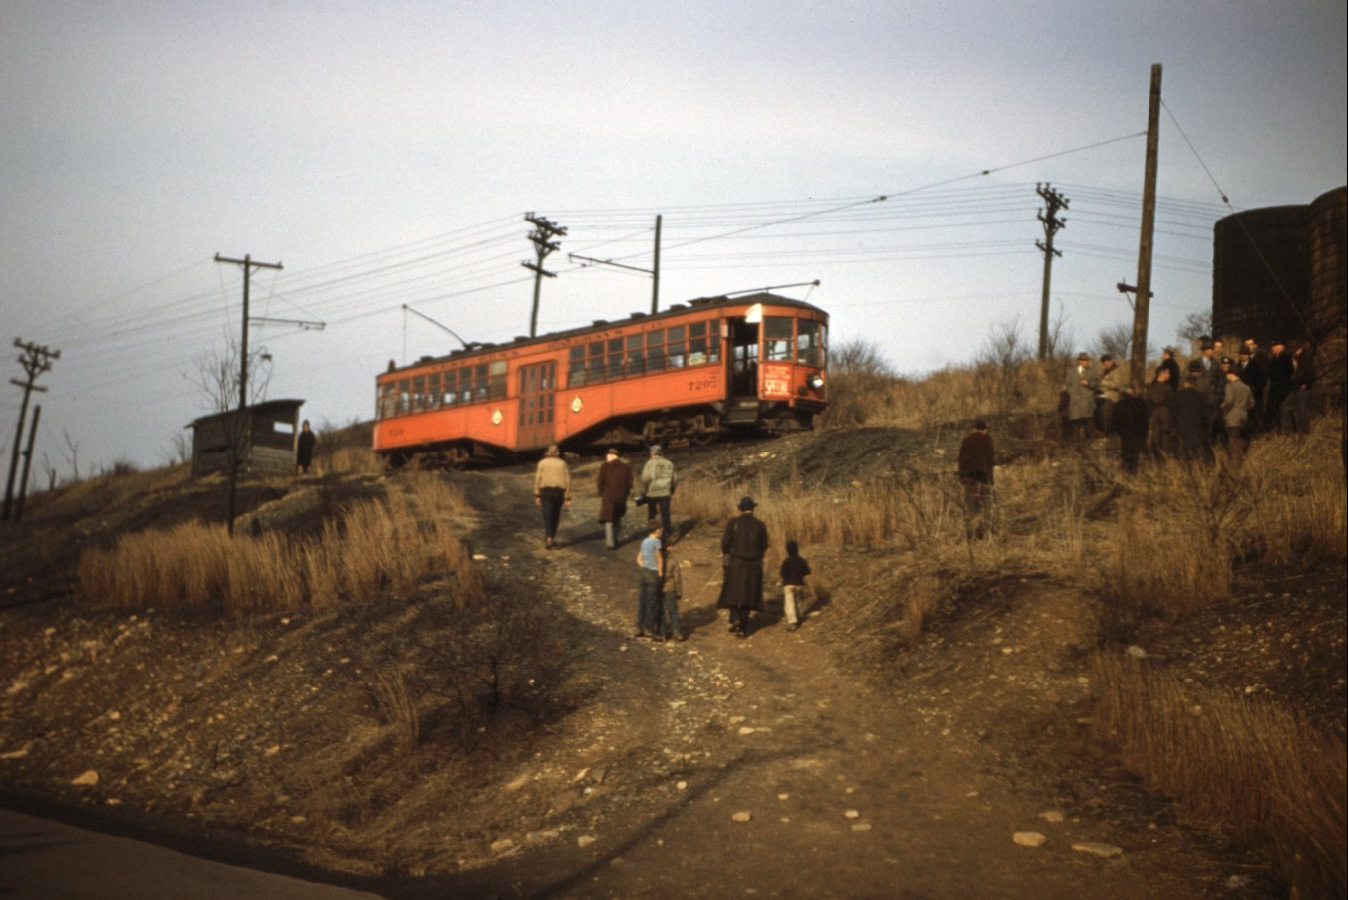 Западная Пенсильвания — 05.02.1950 — Последняя поездка по линии Юнионтаун–Мартин